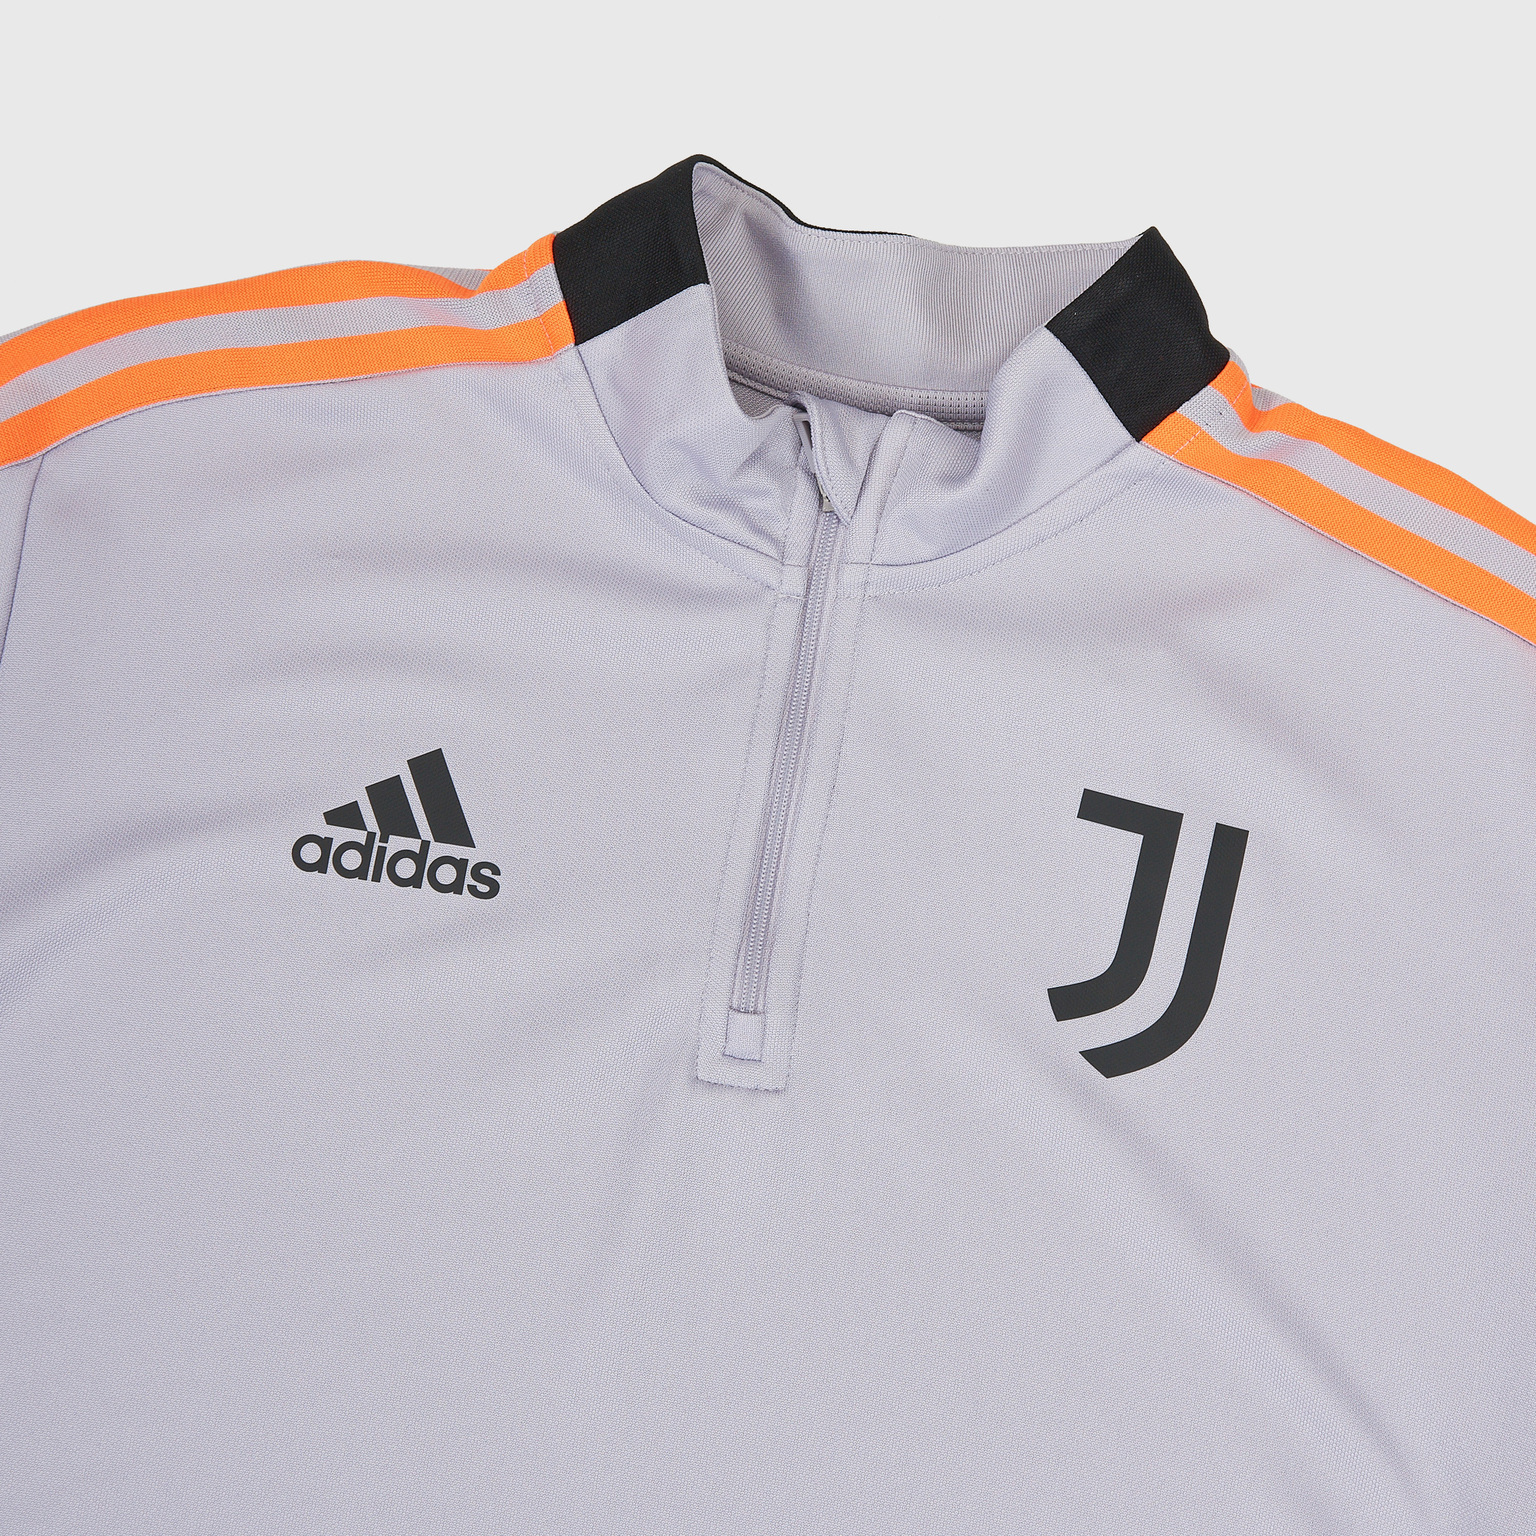 Свитер тренировочный Adidas Juventus H67121